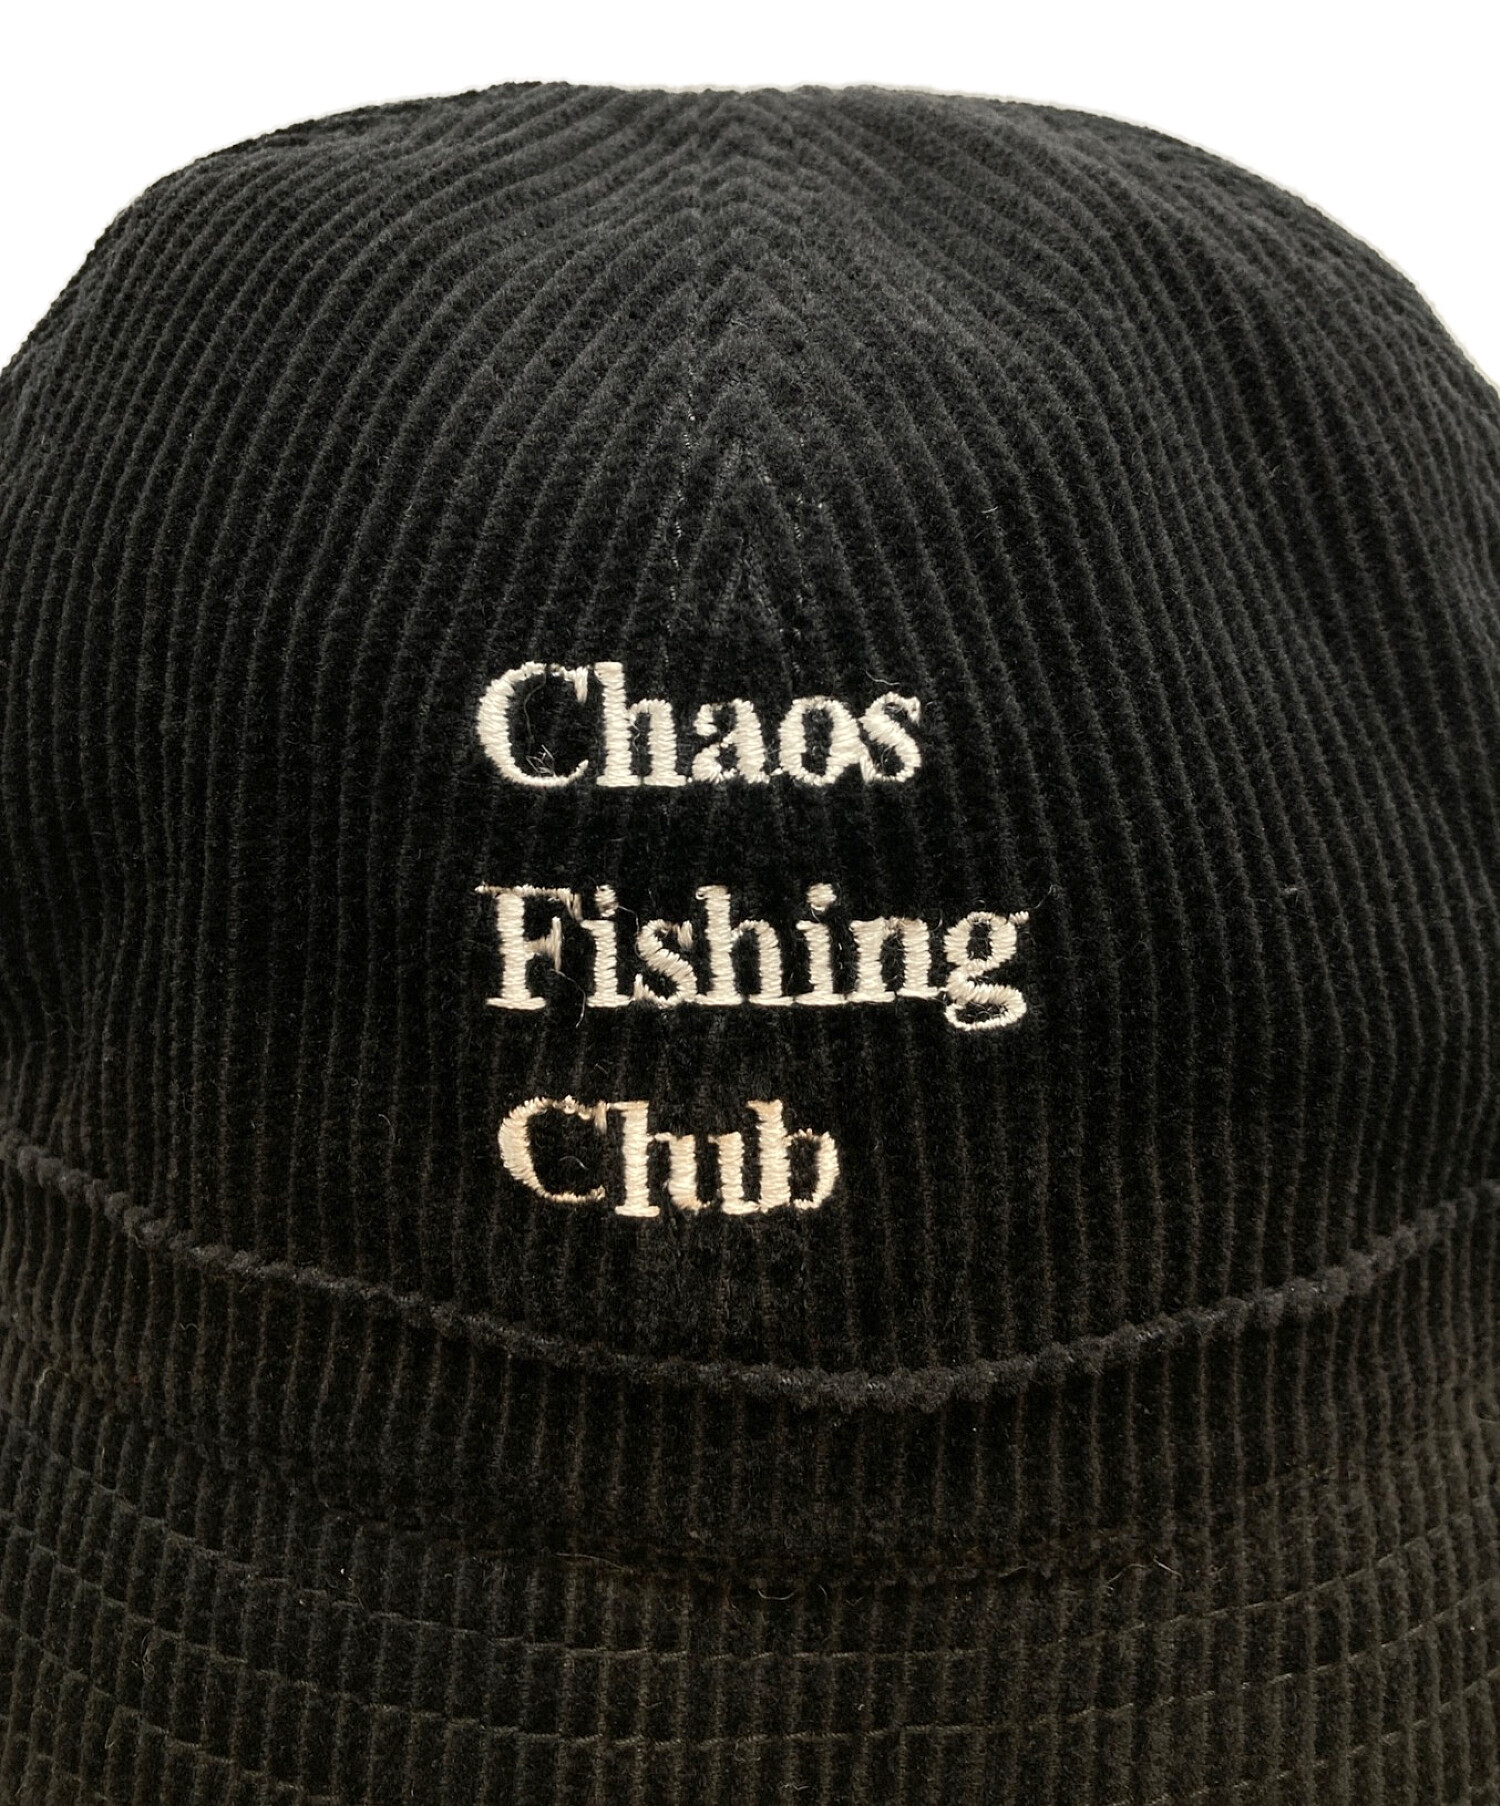 CHAOS FISHING CLUB (カオスフィッシングクラブ) LOGO HAT / バケットハット ブラック サイズ:FREE